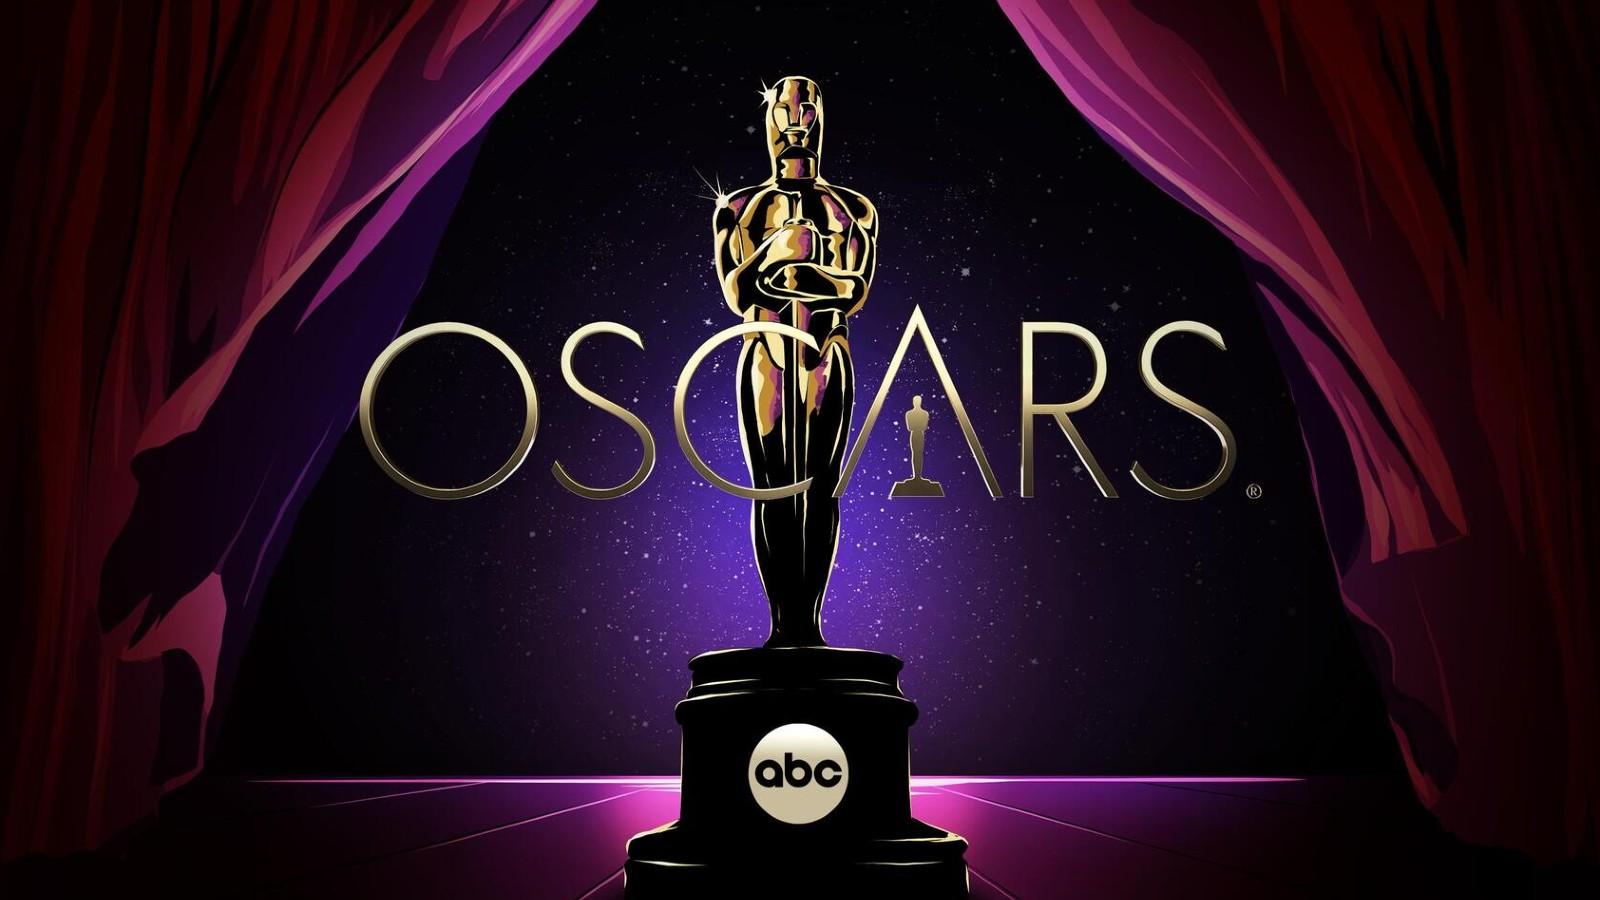 The logo for the Oscars 2023